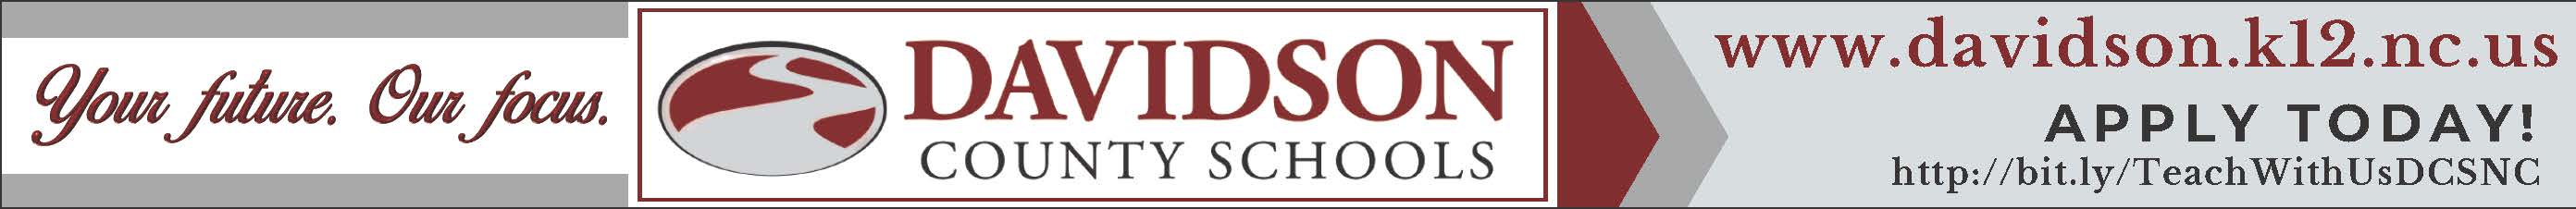 Davidson County Schools 